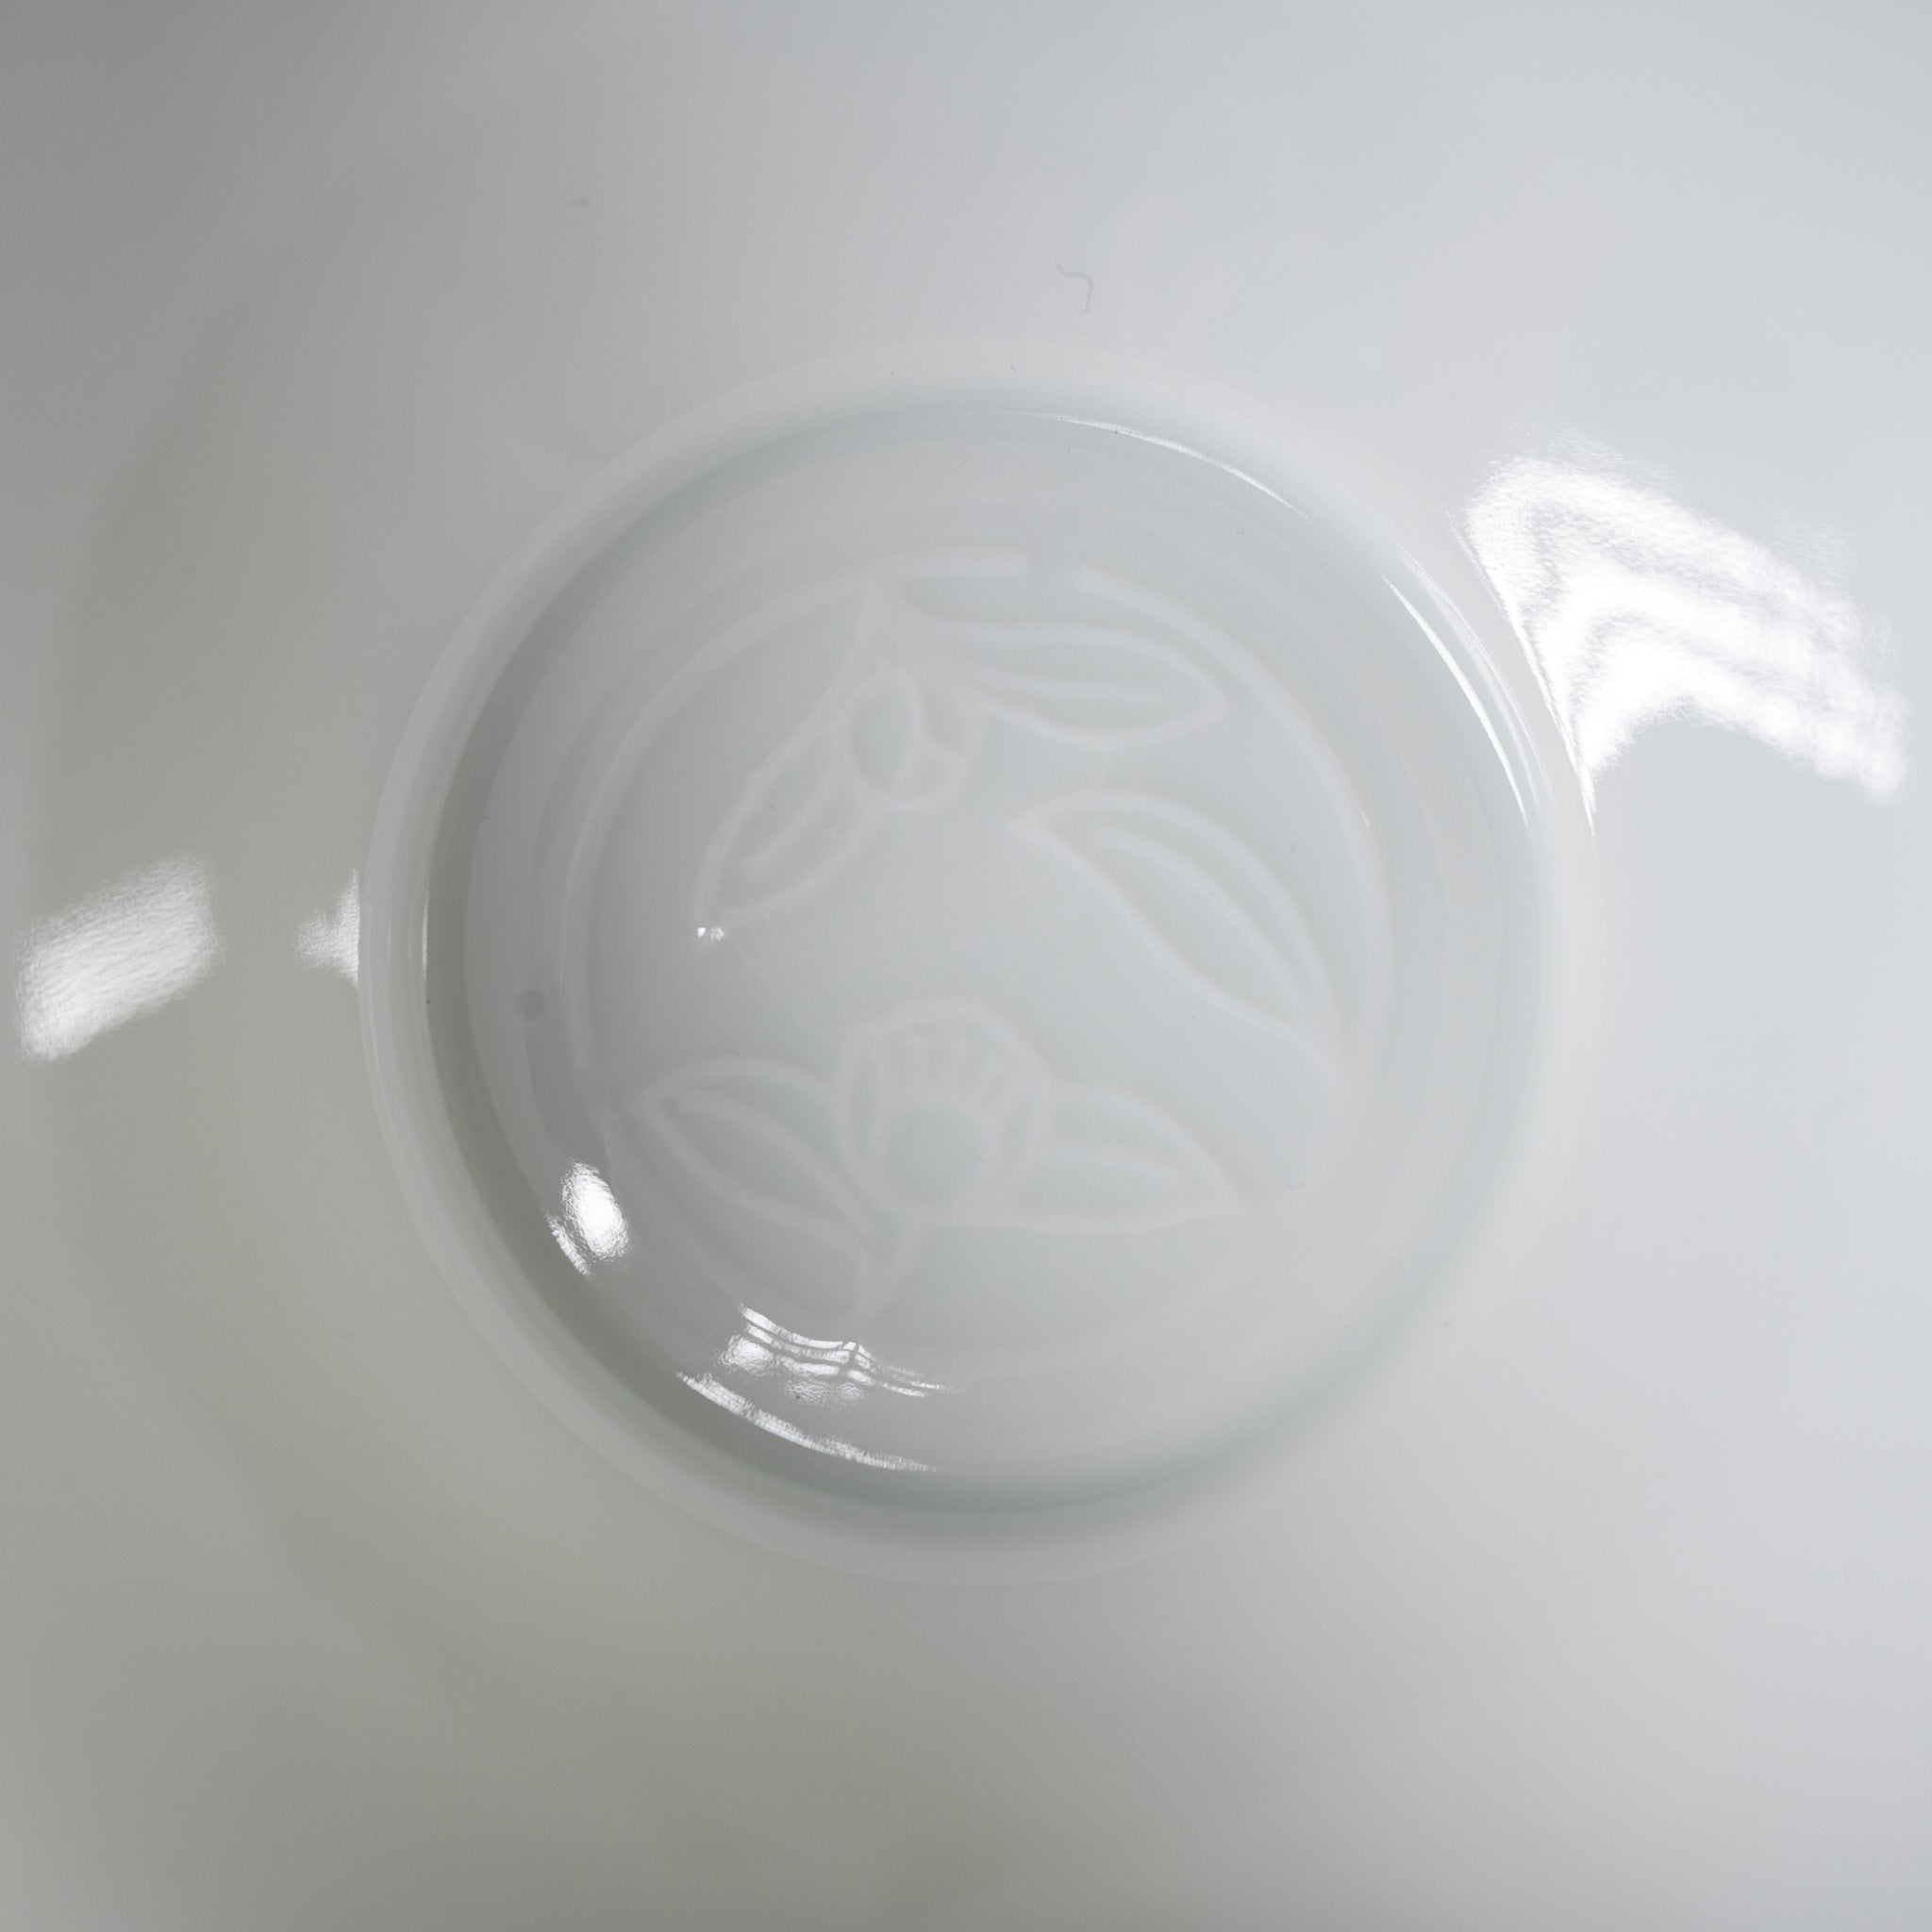 Kyo Kiyomizu Ware Hand made Cup & Saucer Set - Pure White / 京焼・清水焼き